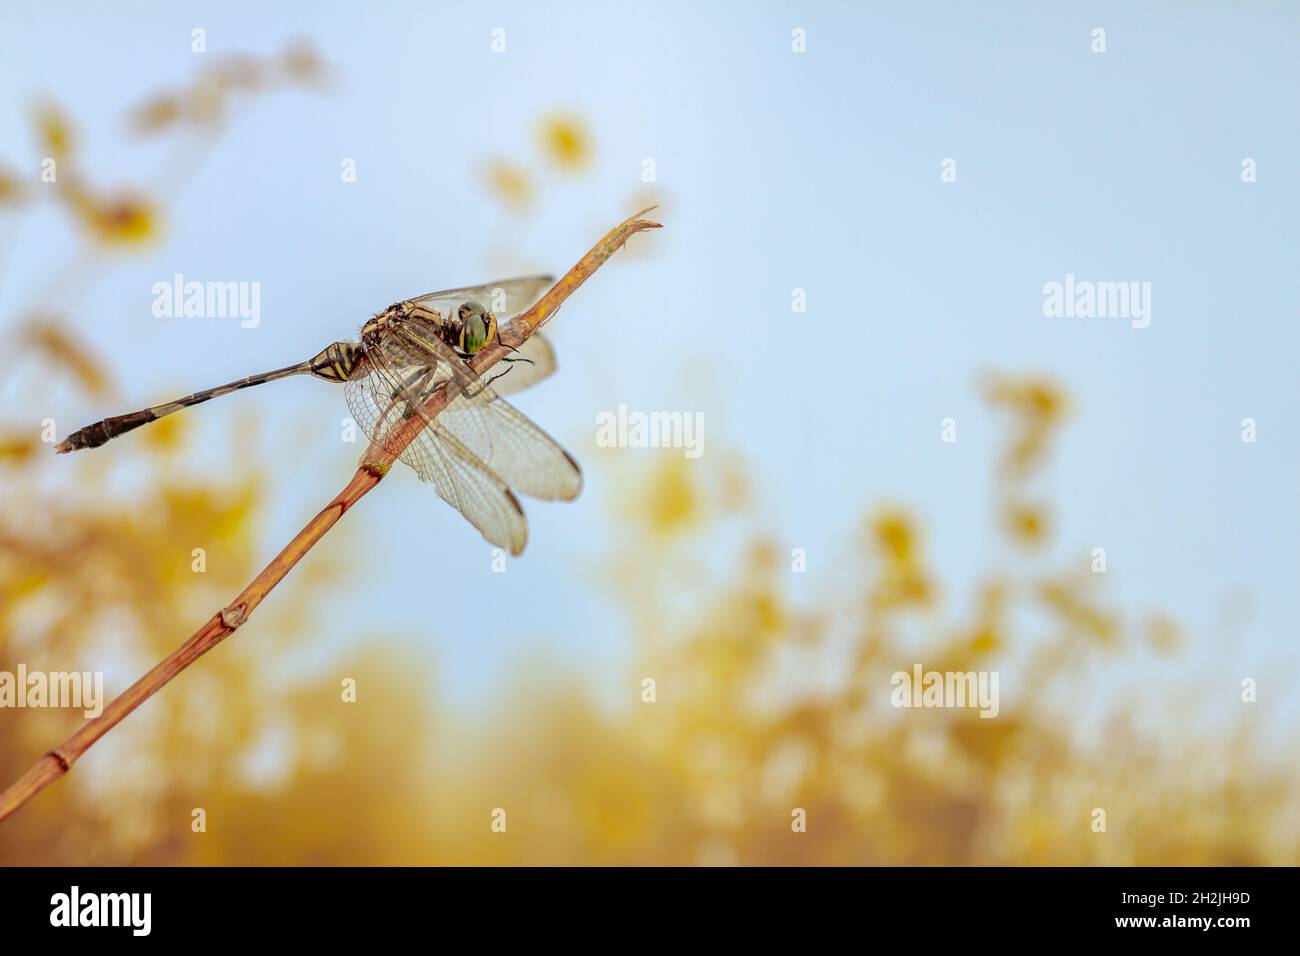 Una libélula encaramada en una pequeña rama, con un telón de fondo de arbustos en clima cálido, por el tema de la naturaleza y la vida animal Foto de stock